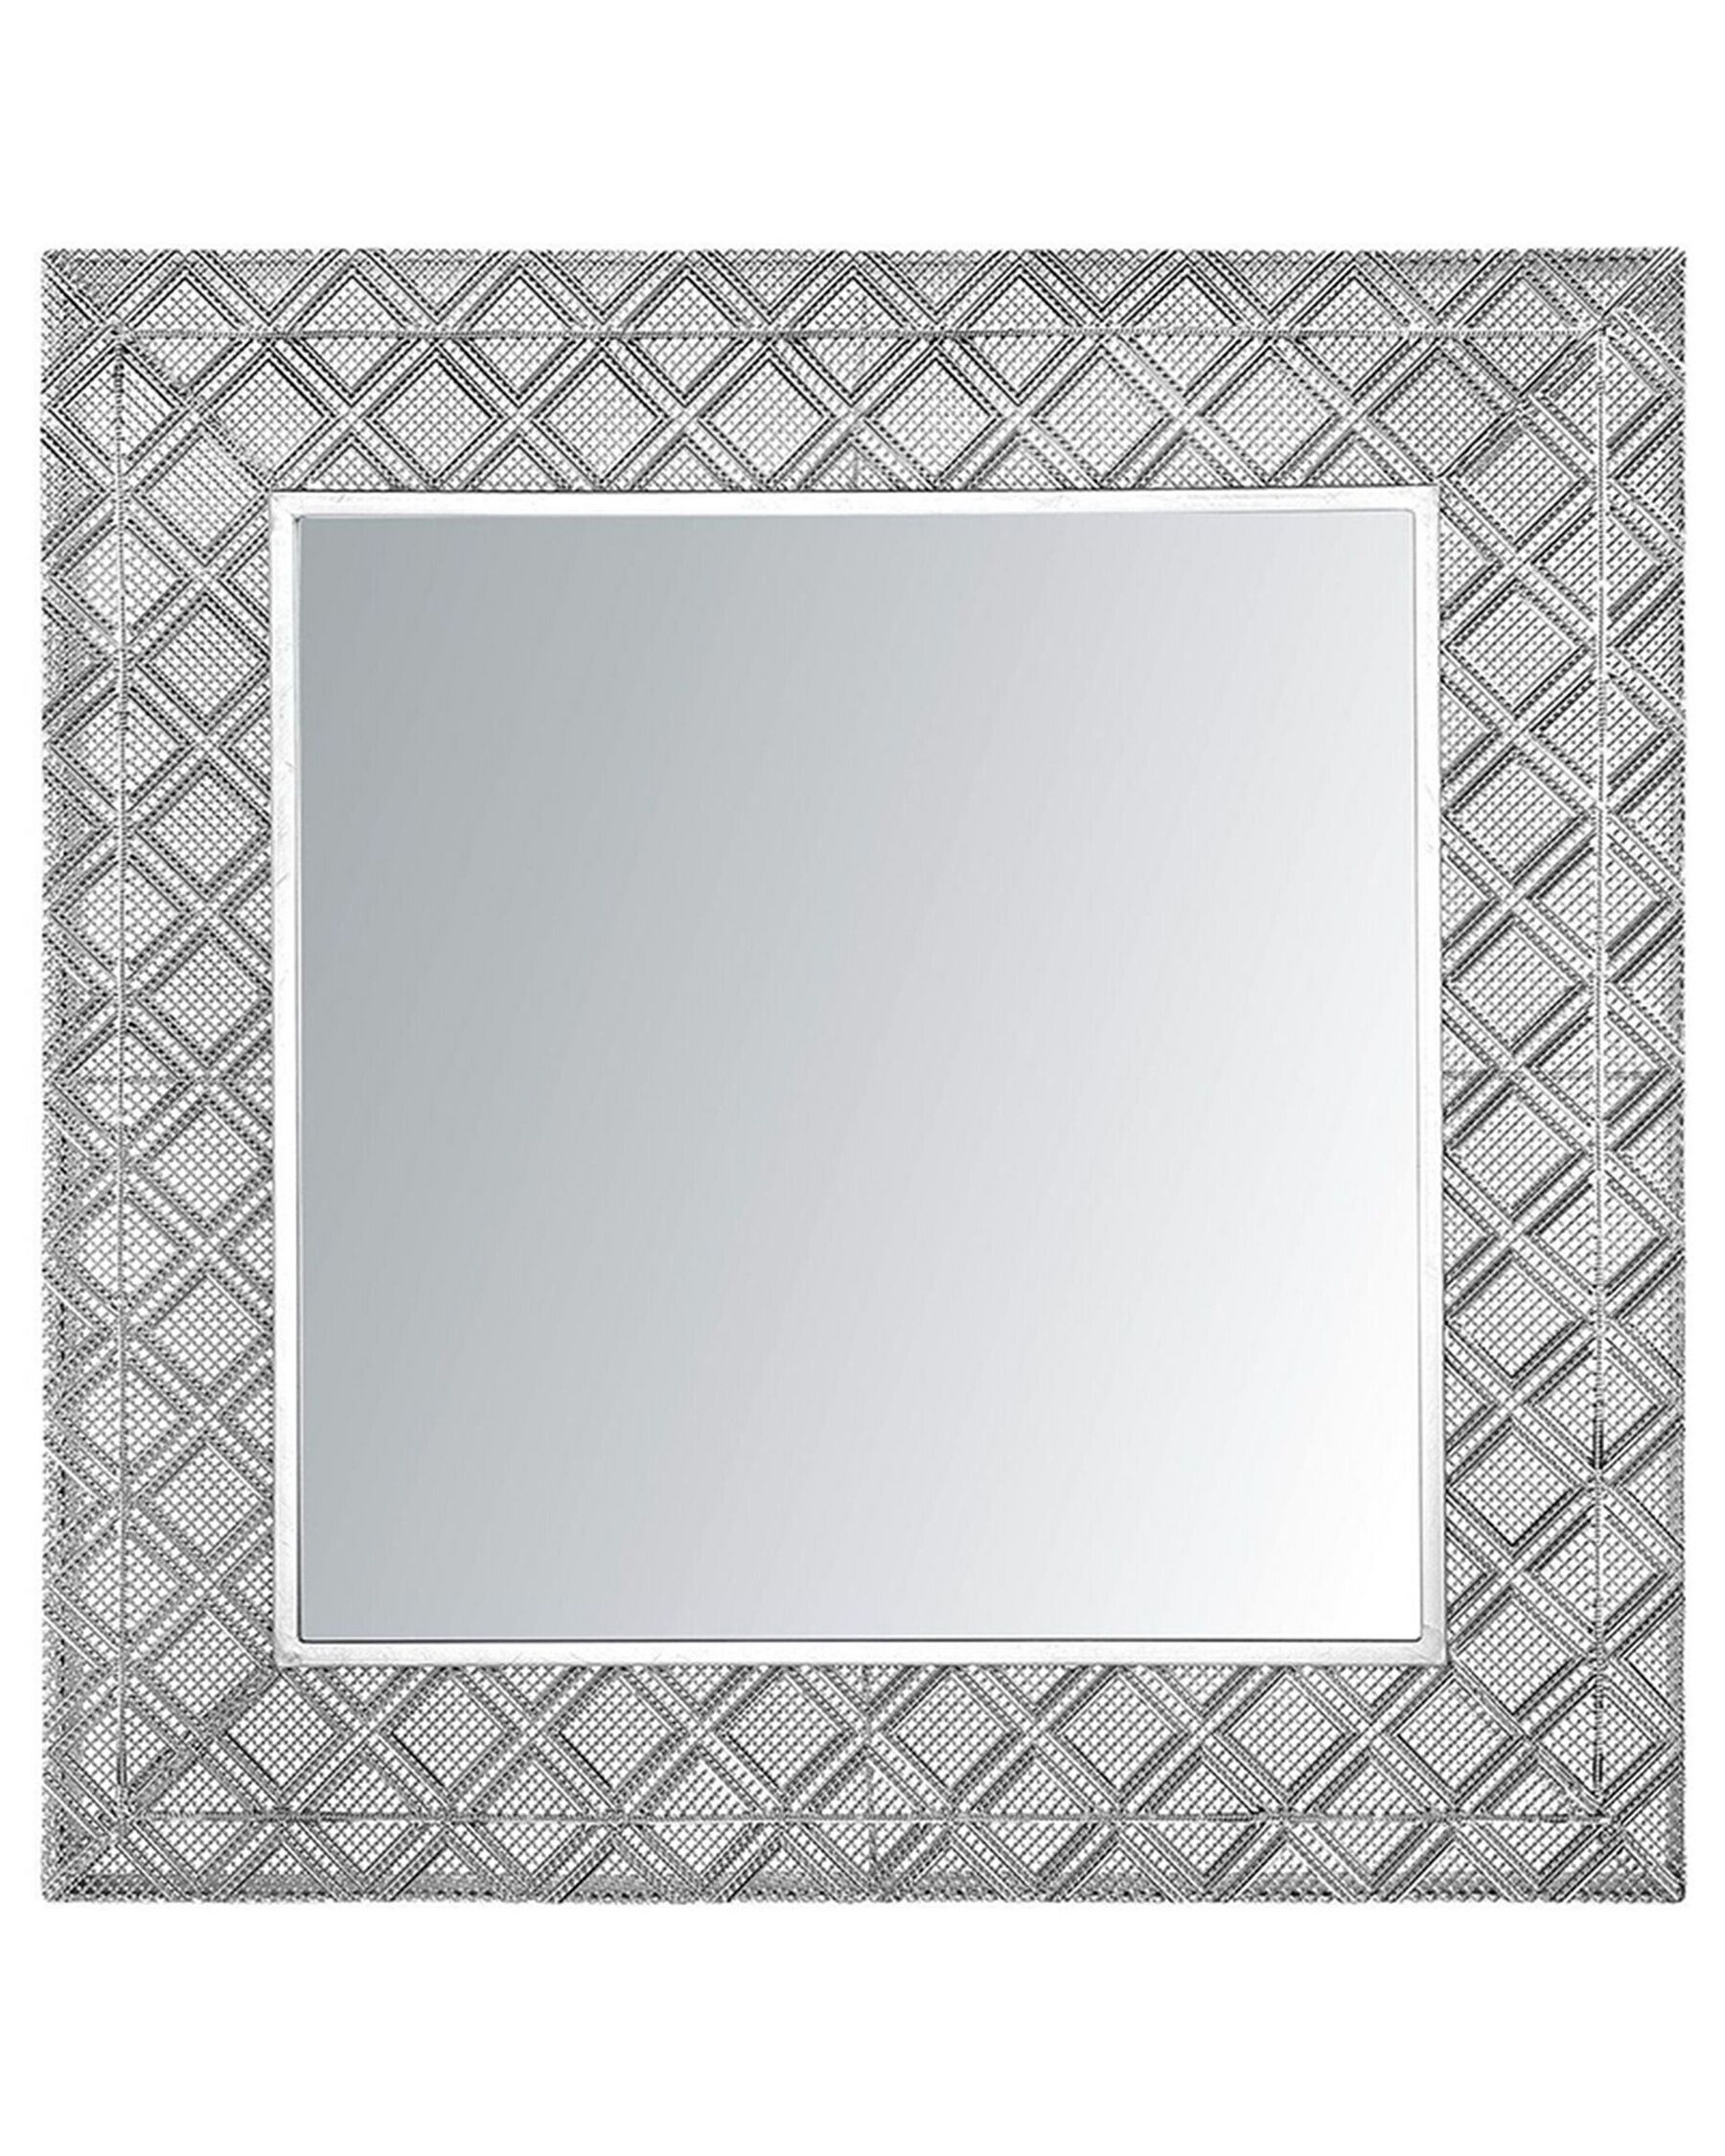 Specchio da parete in color argento 80x80 EVETTES_747456